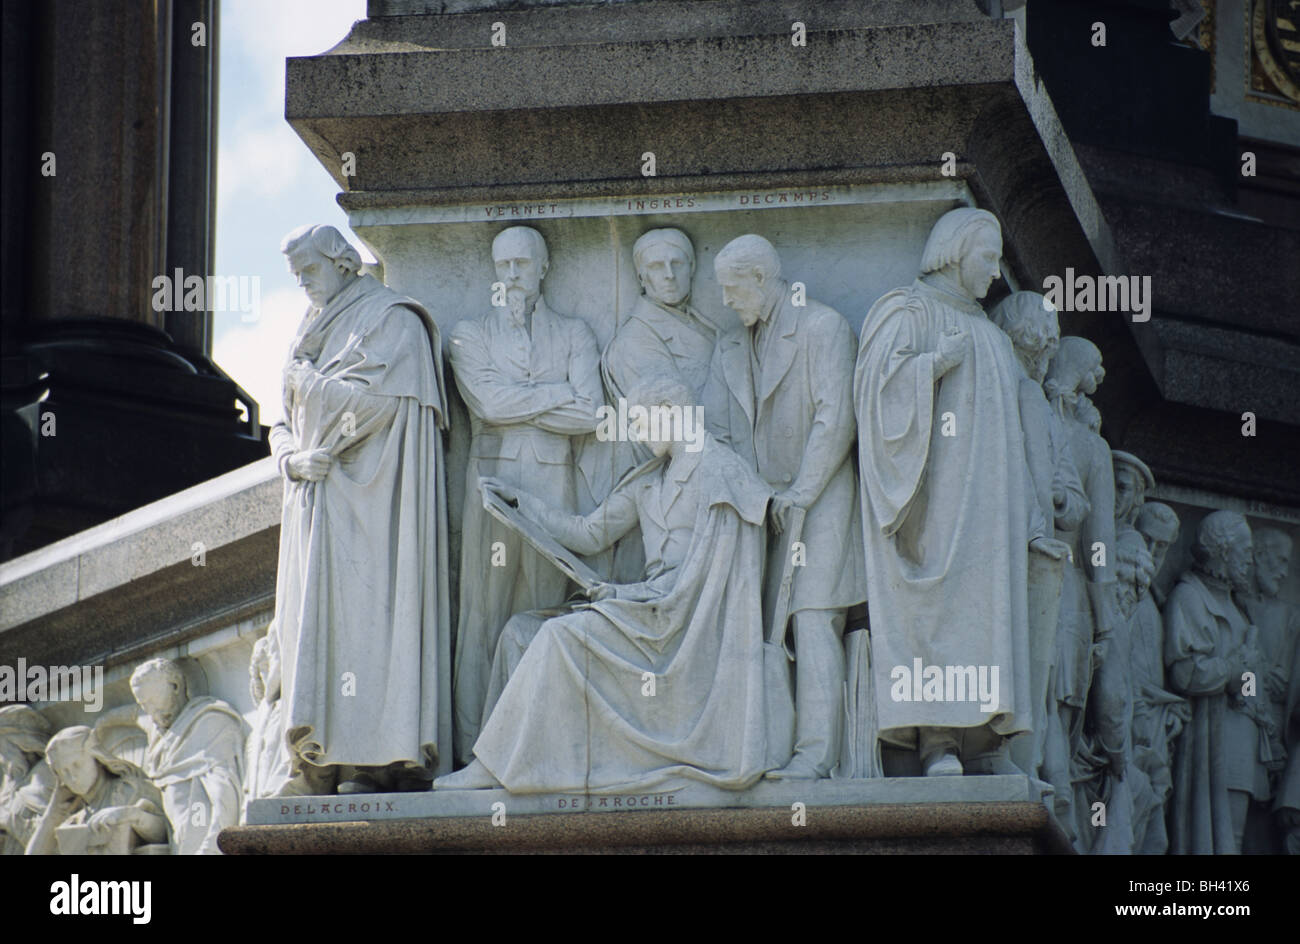 Sculpture sur Albert Memorial, London, montrant le peintre Delaroche (assis) entouré par Delacroix, Vernet, Ingres et Decamps Banque D'Images